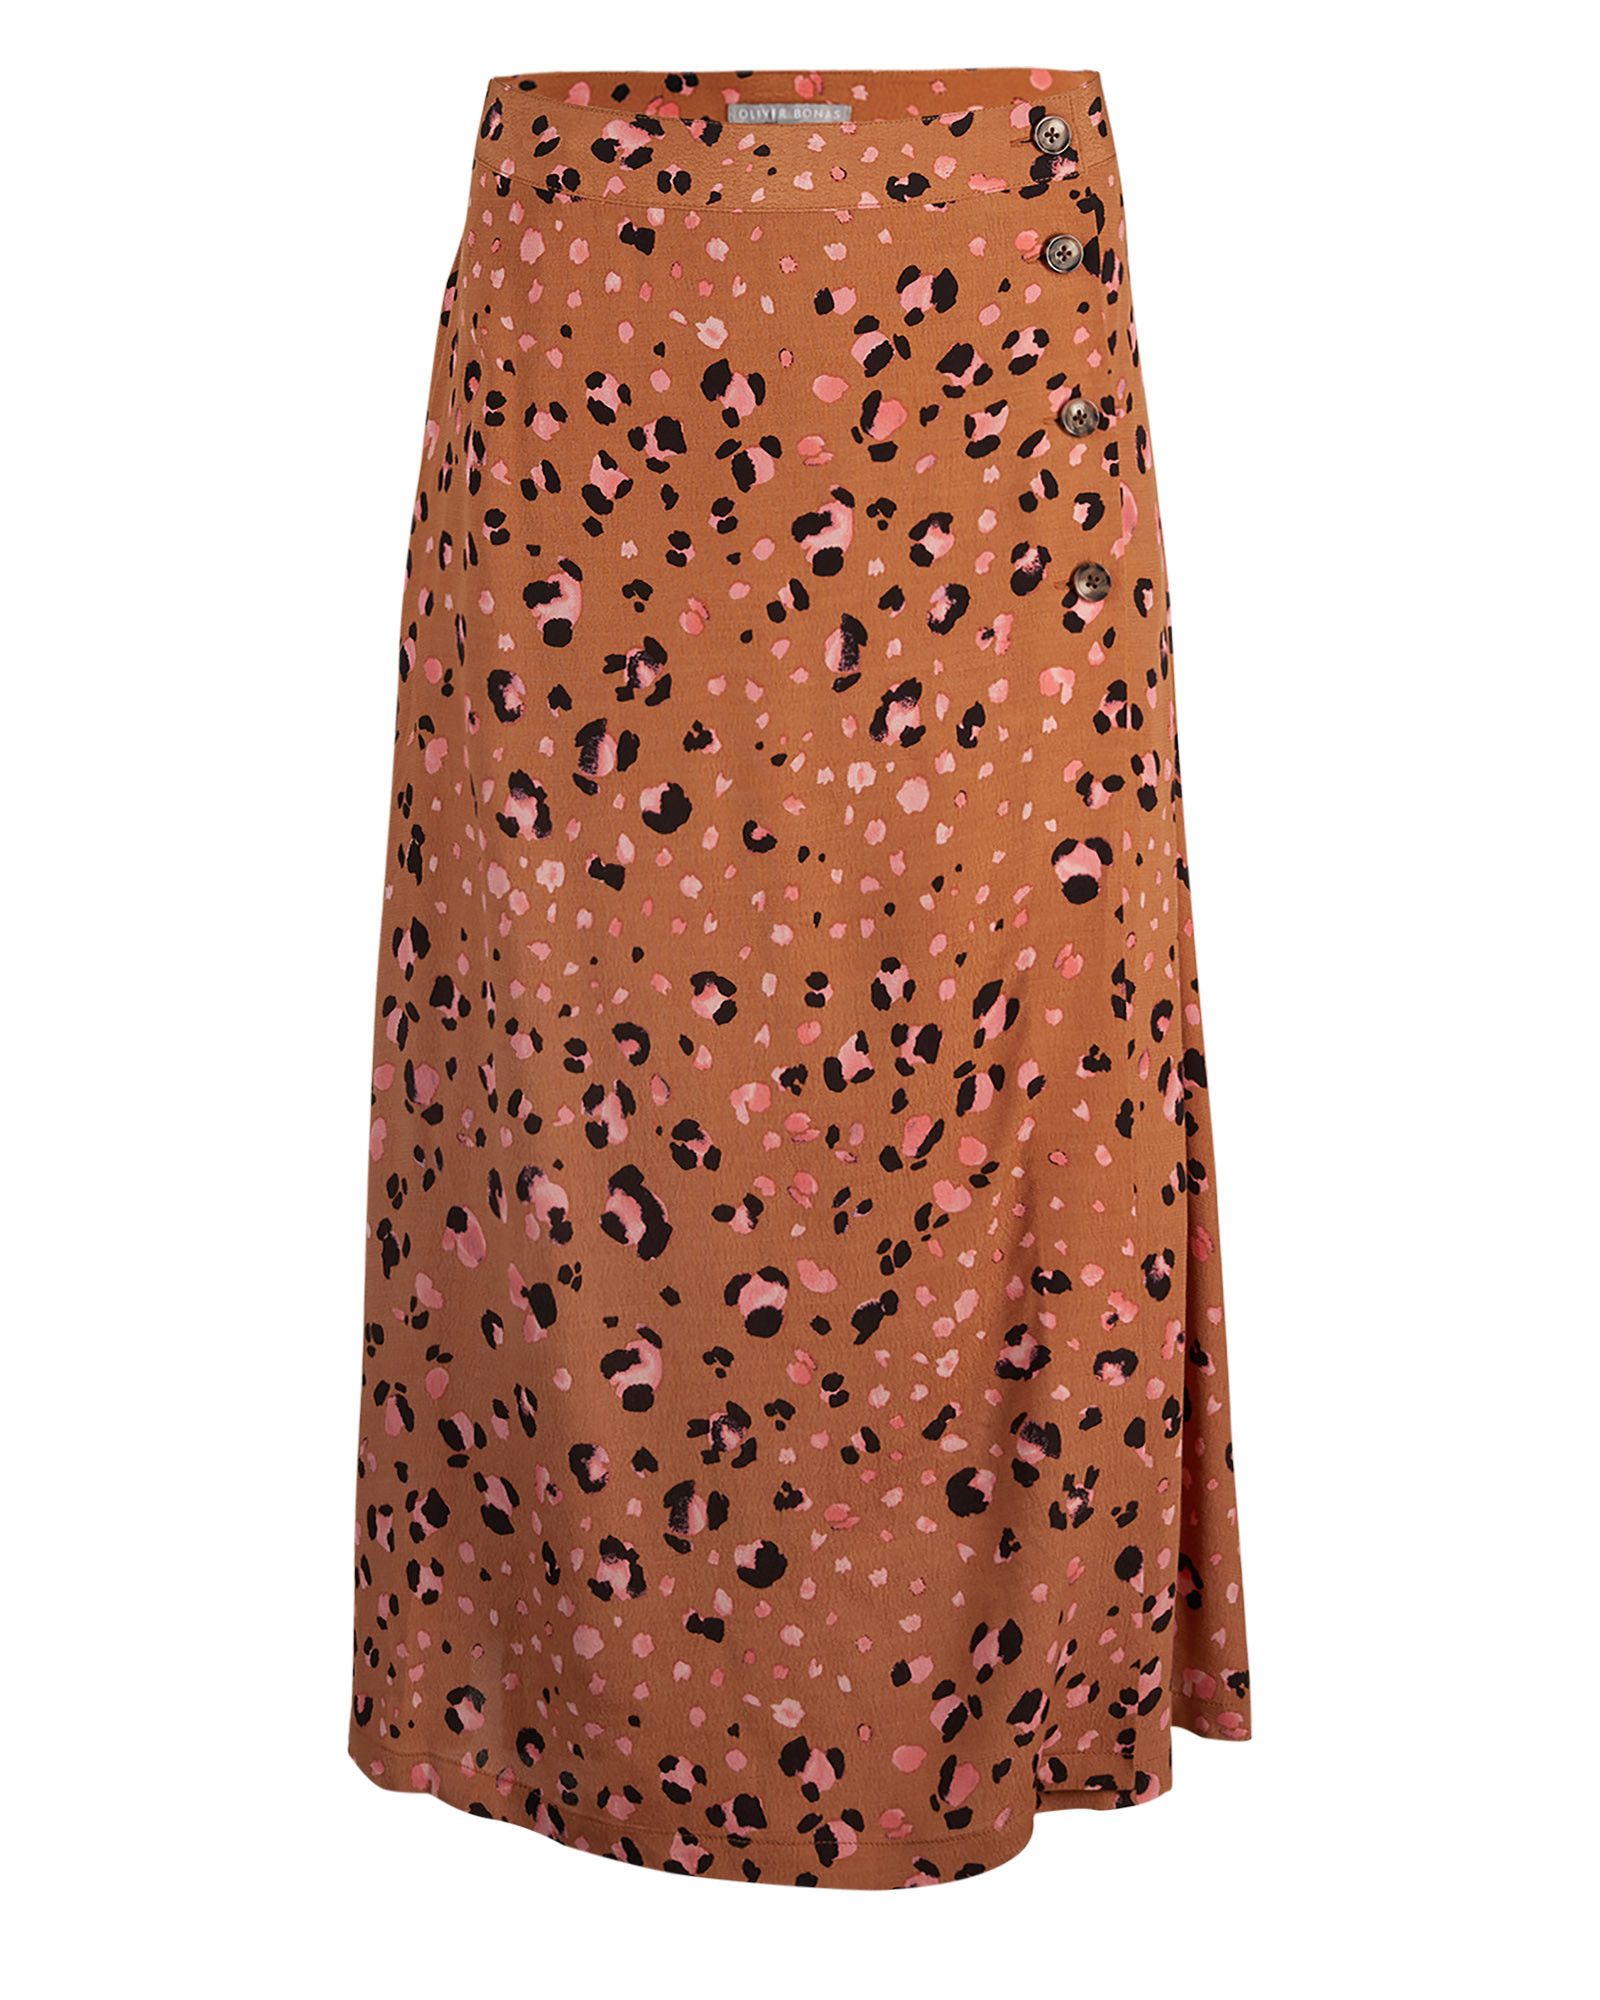 oliver bonas leopard dress